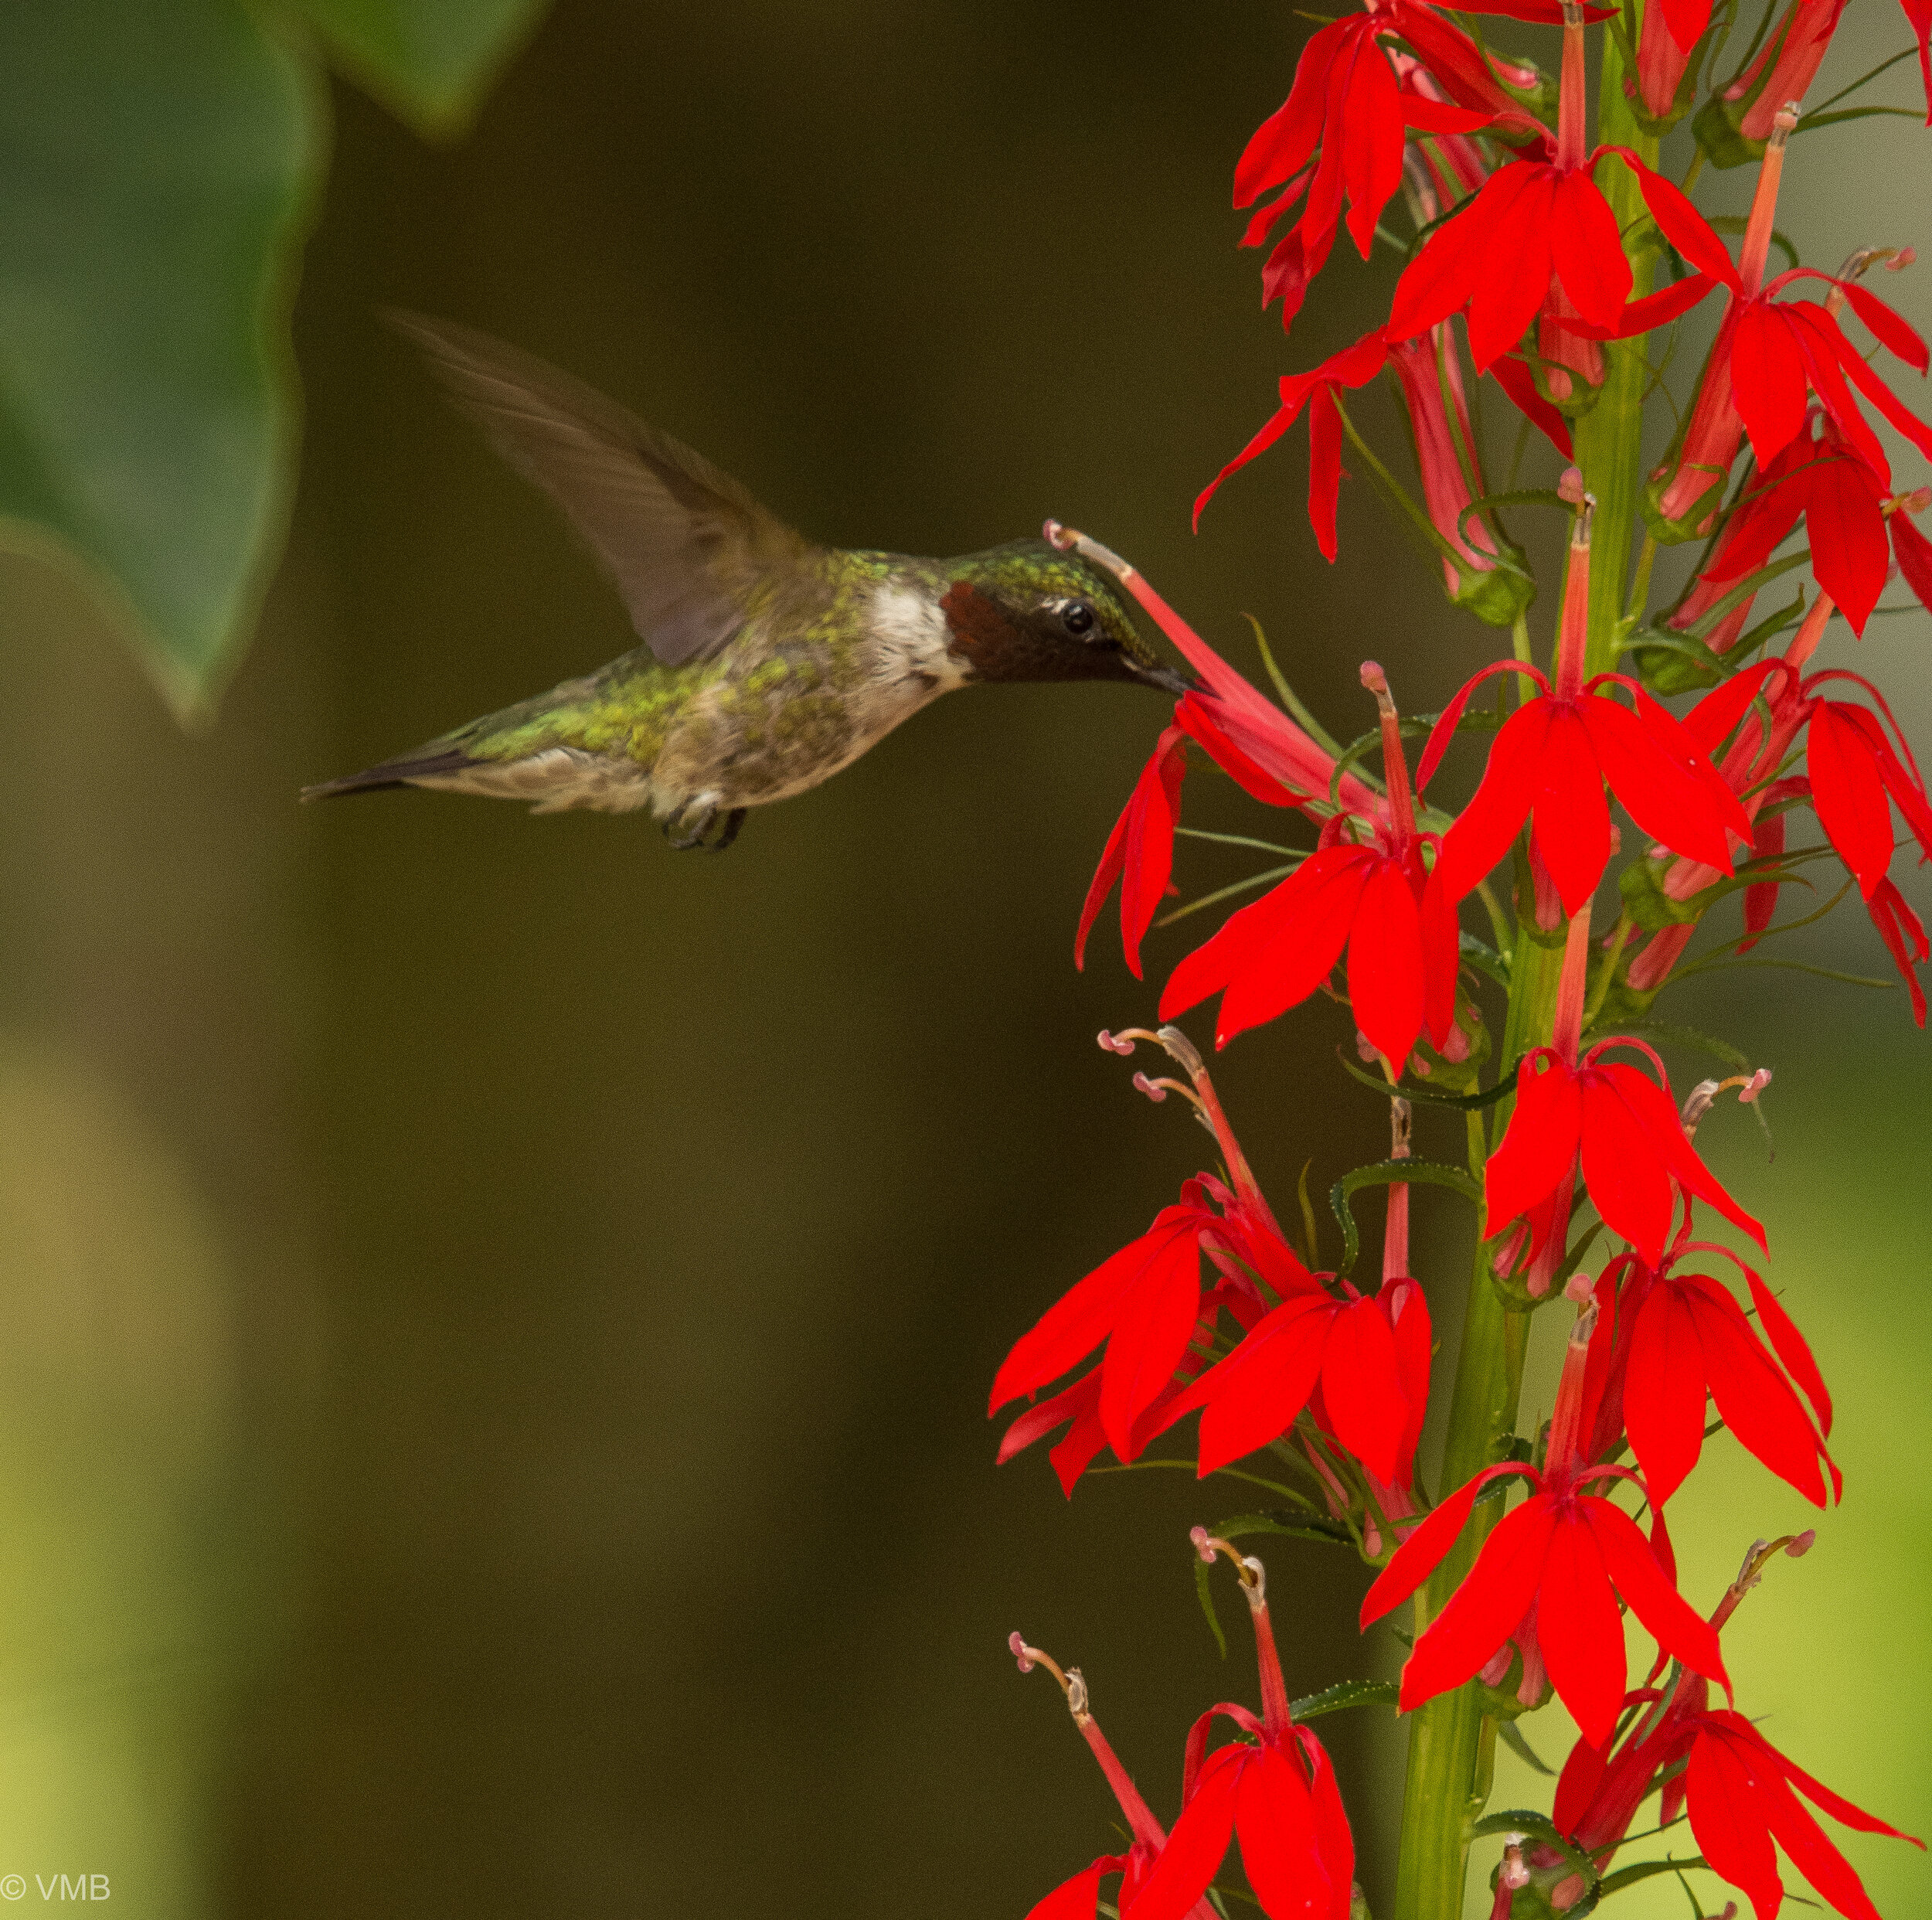 Hummingbird feeds from a cardinal flower in the garden.